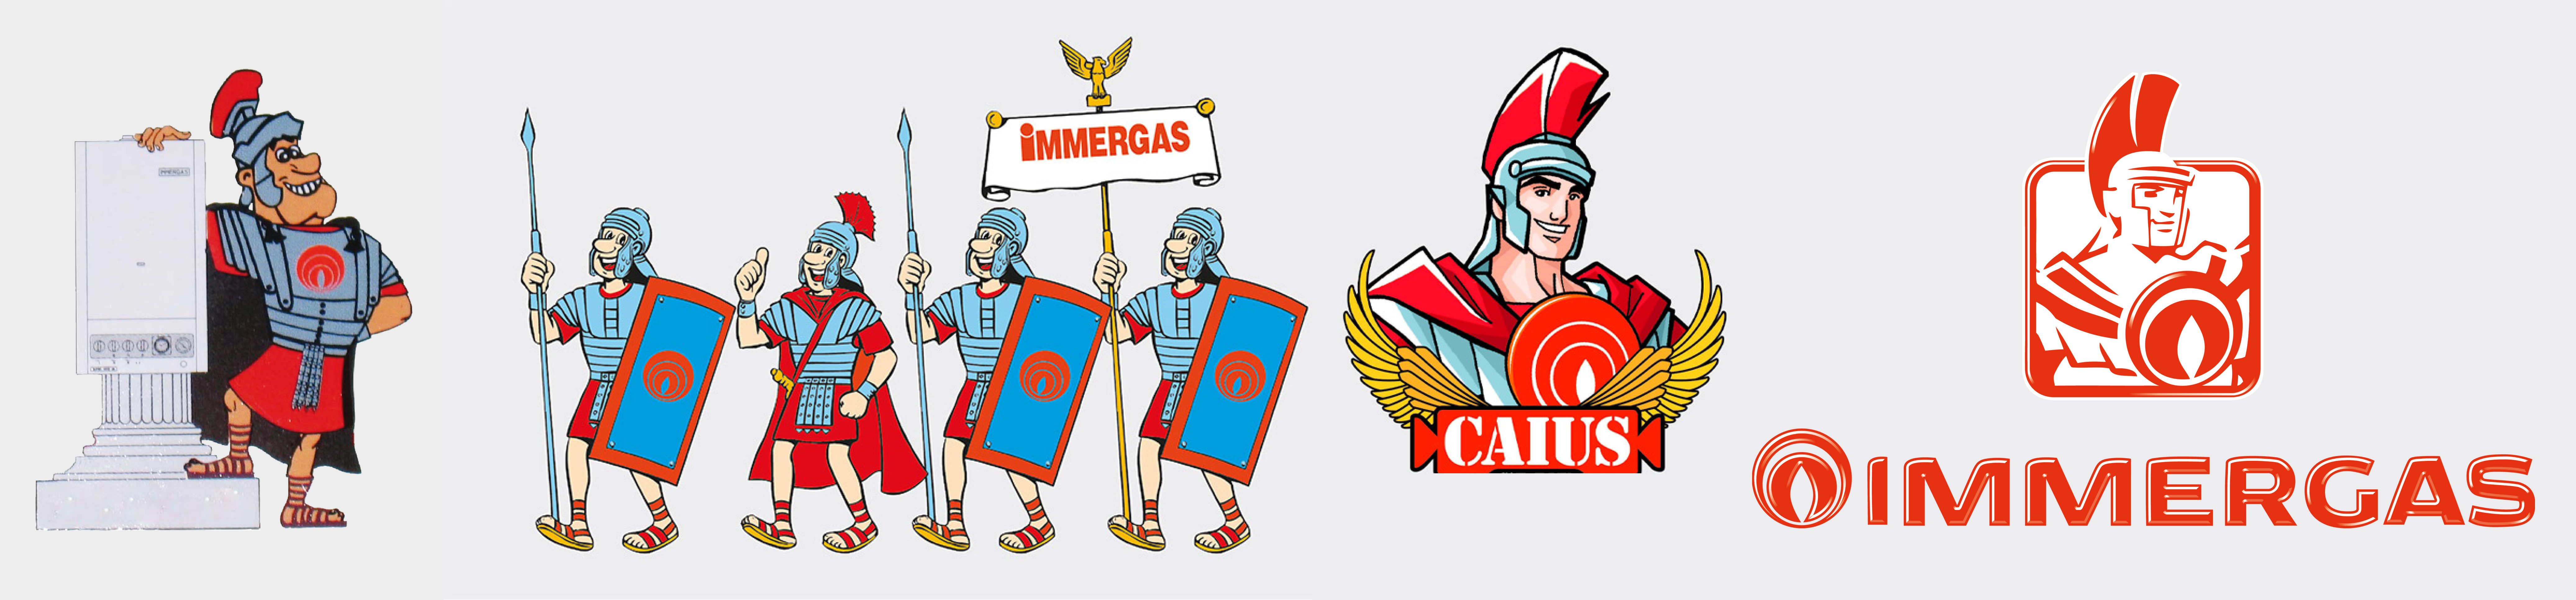 Evolución de la imagen de Caius Camillus hasta el logotipo actual de Immergas.